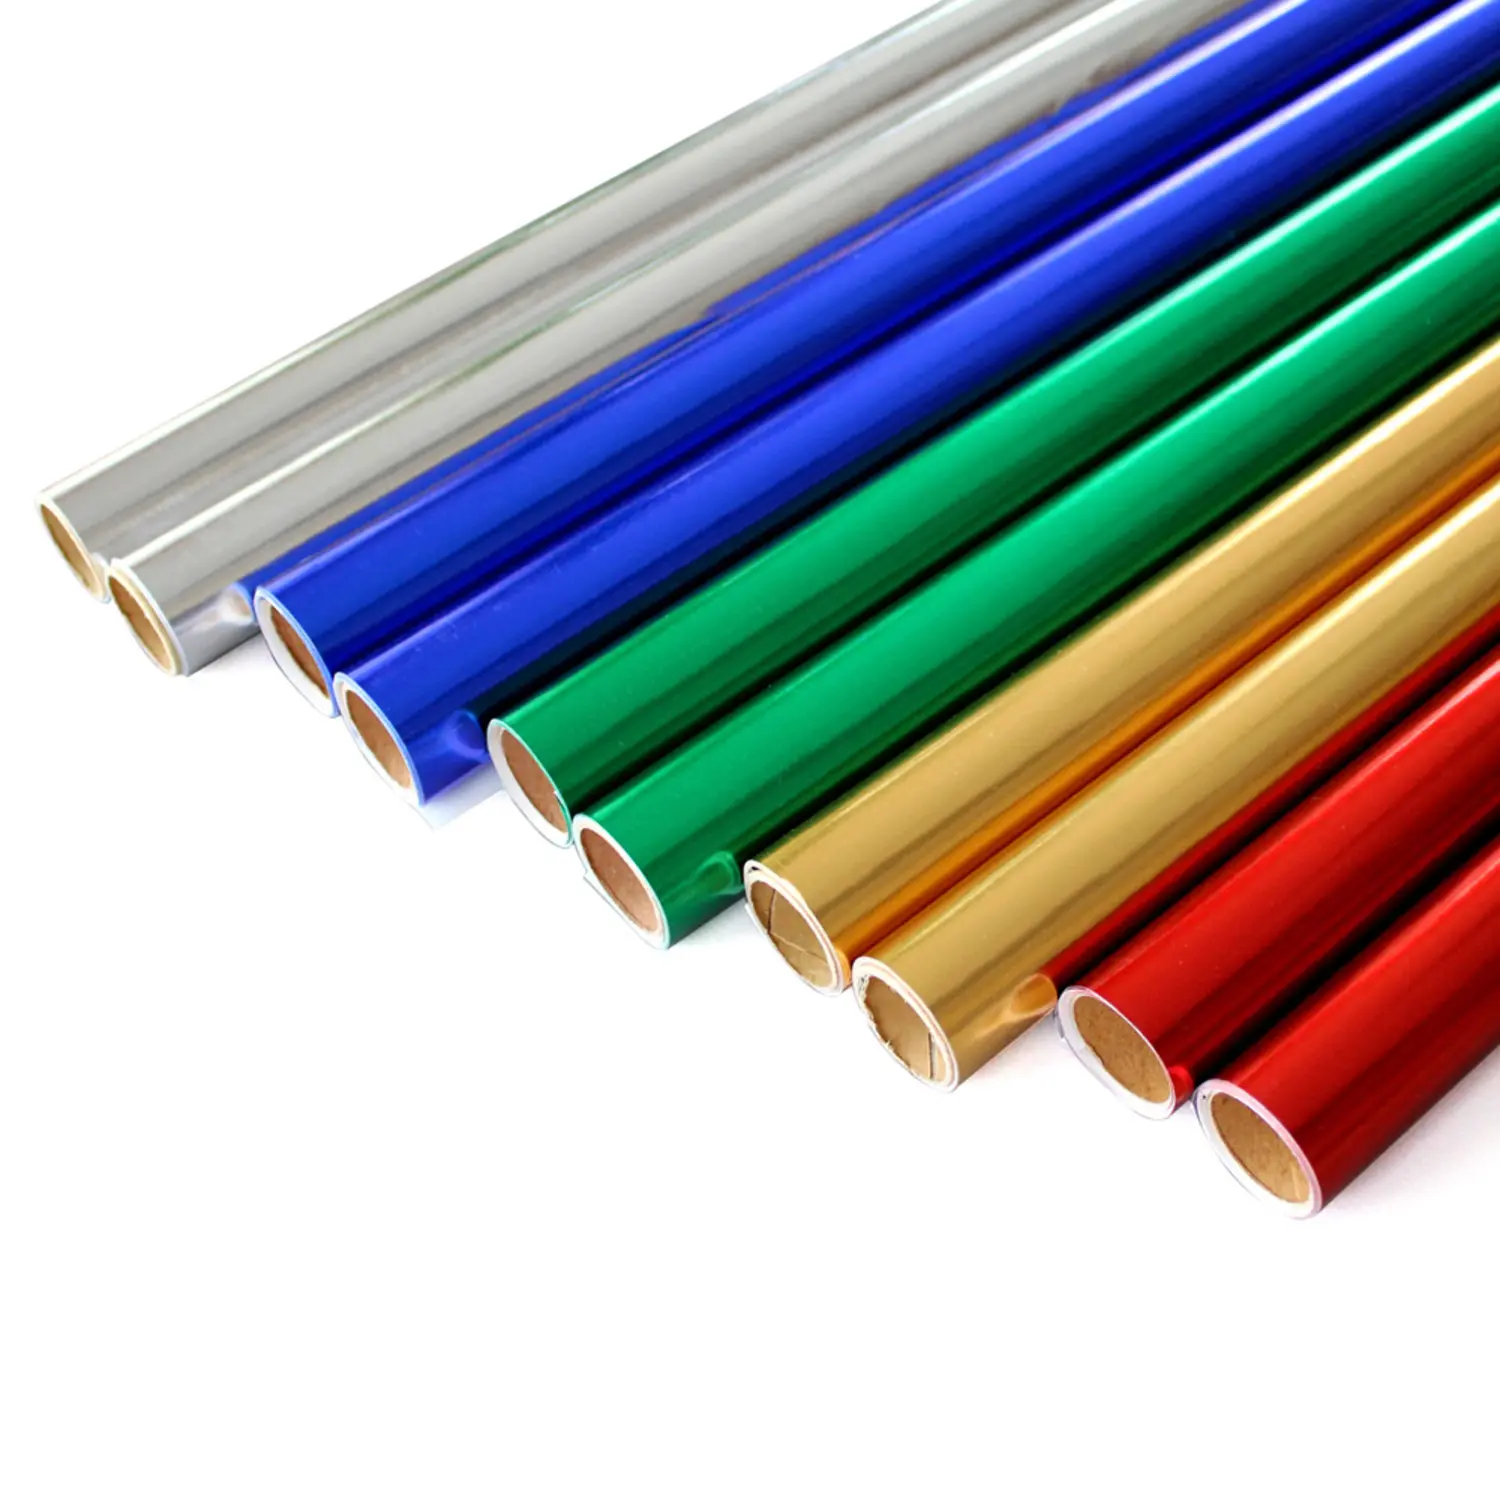 อลูมิเนียมสีเงินและสีทองเมทัลลิกระดาษอิงค์เจ็ท/สีทองสีเงินและสีทองเมทัลลิกระดาษอิงค์เจ็ท